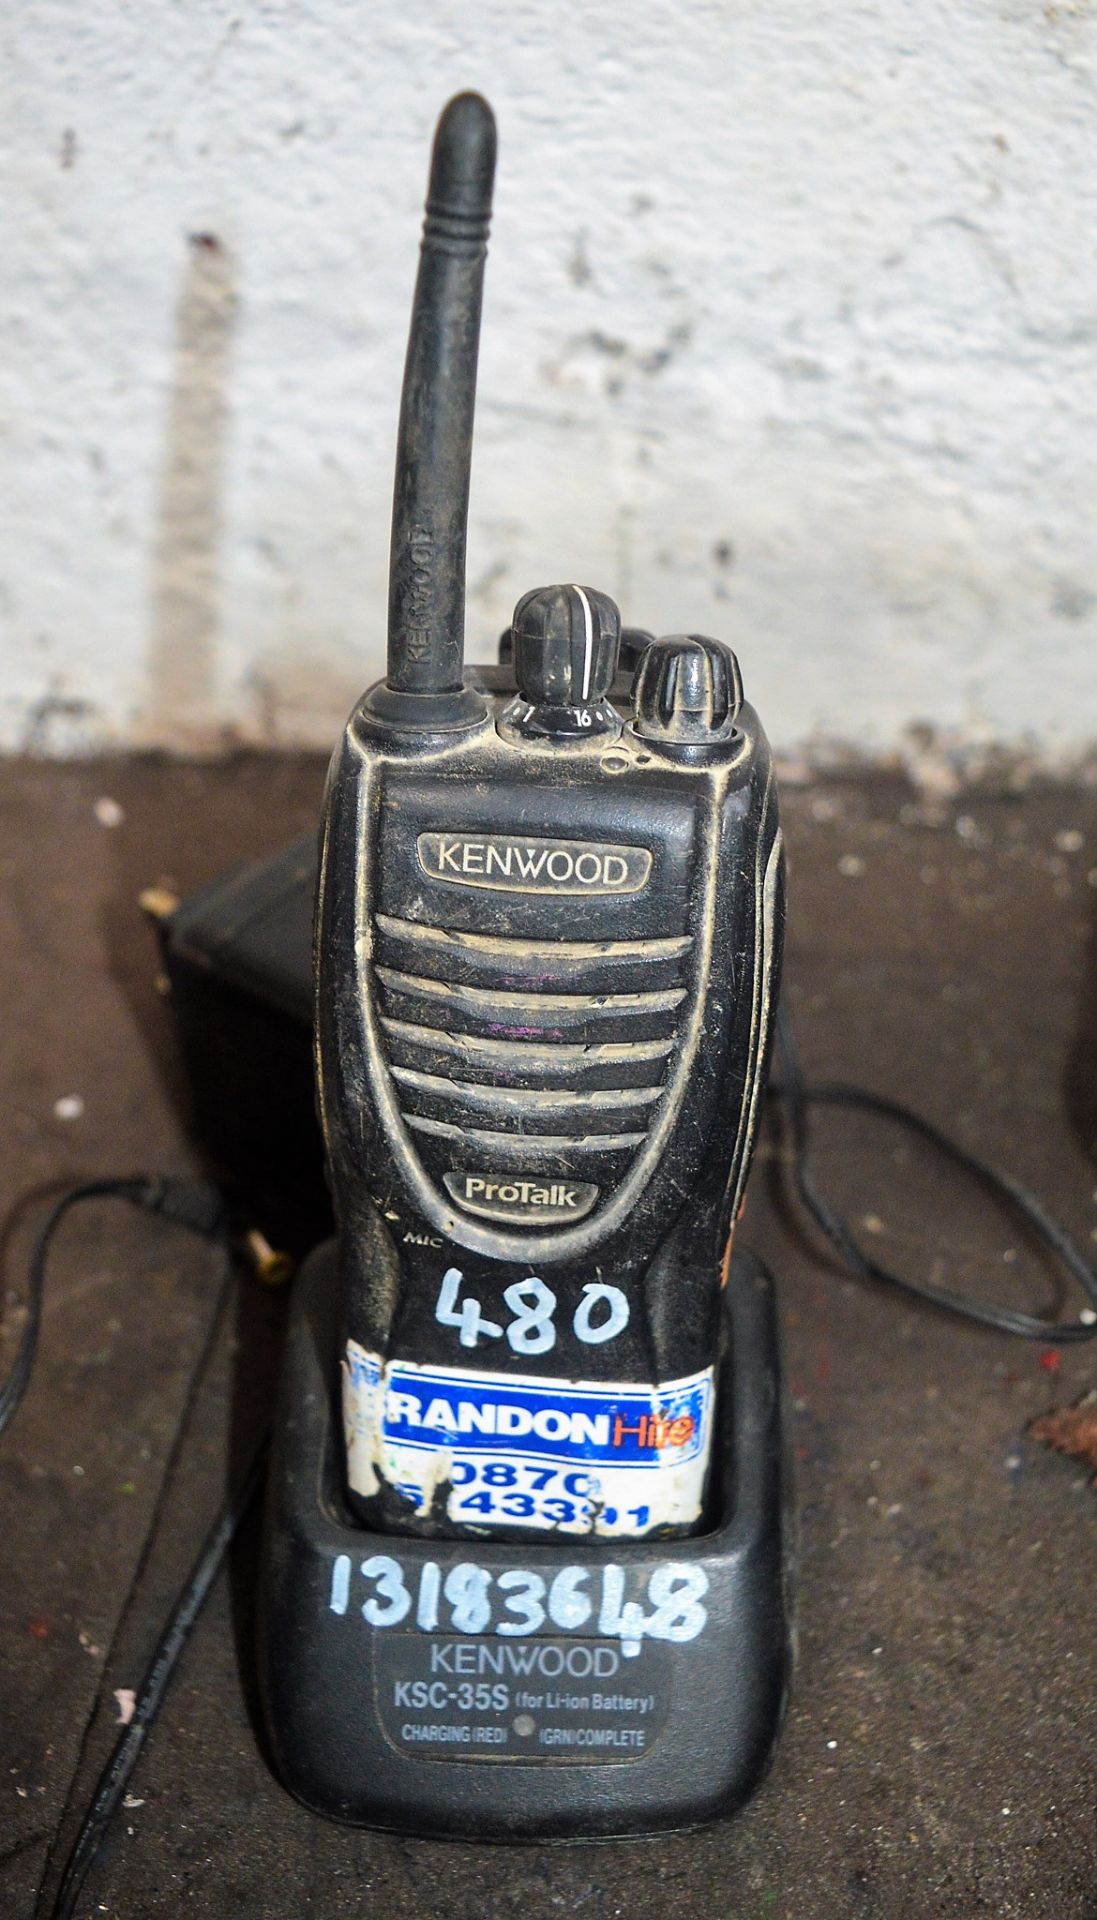 Kenwood radio 13183648